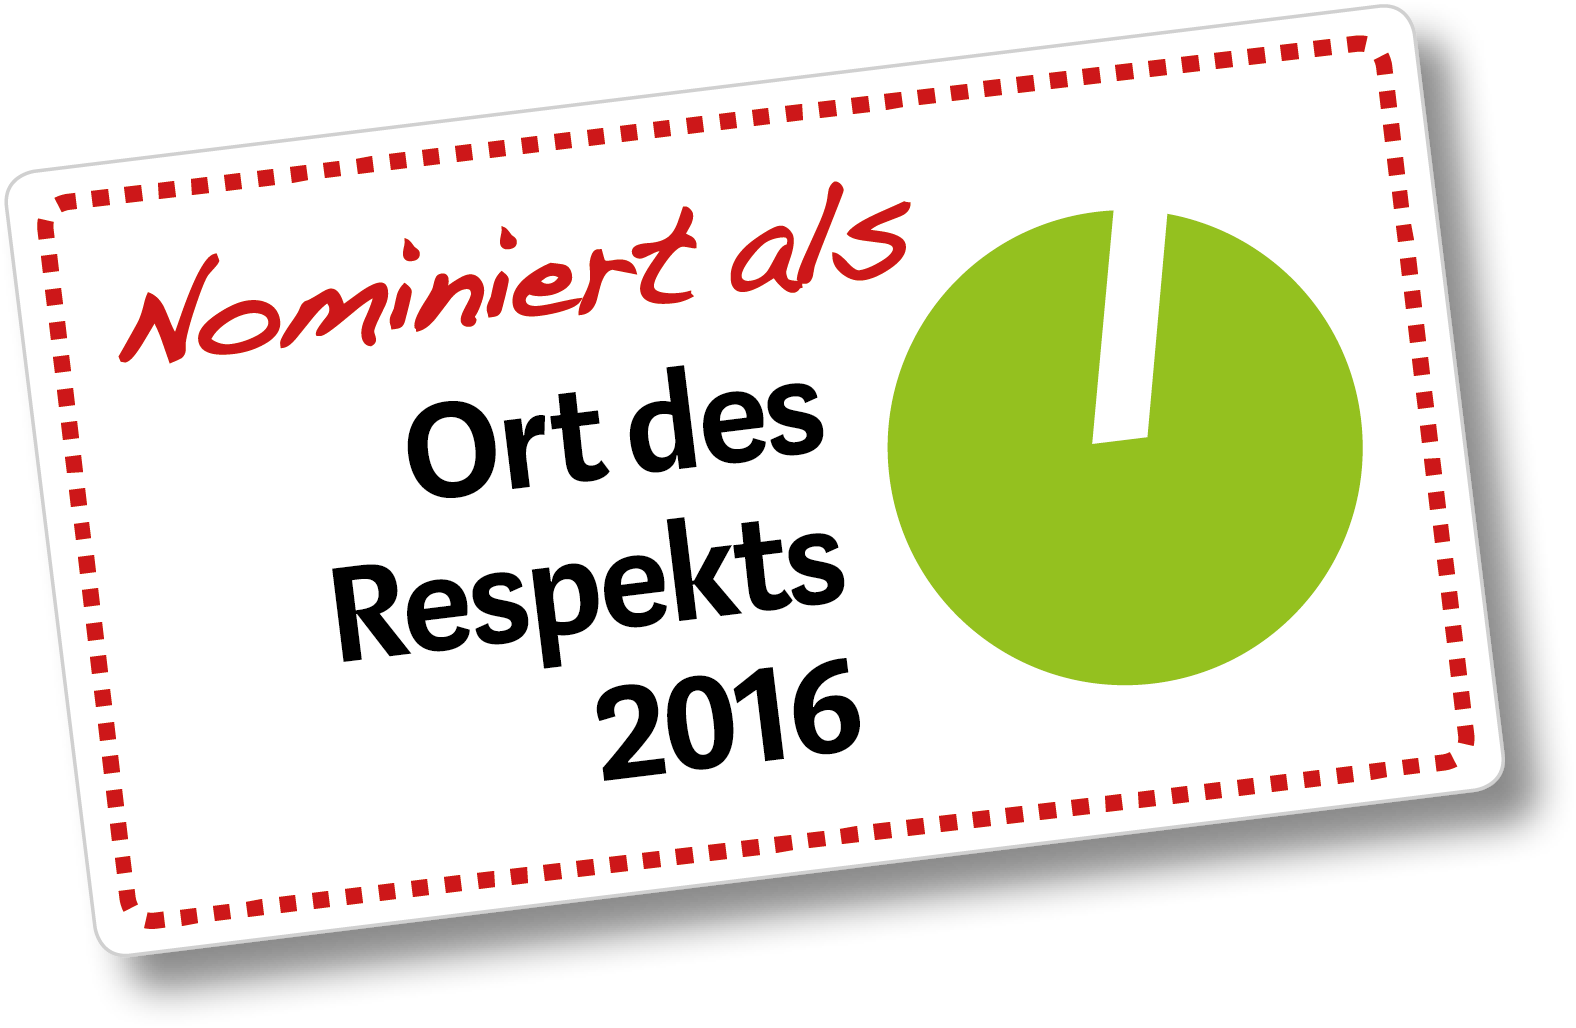 OrtedesRespekts2016_Logo